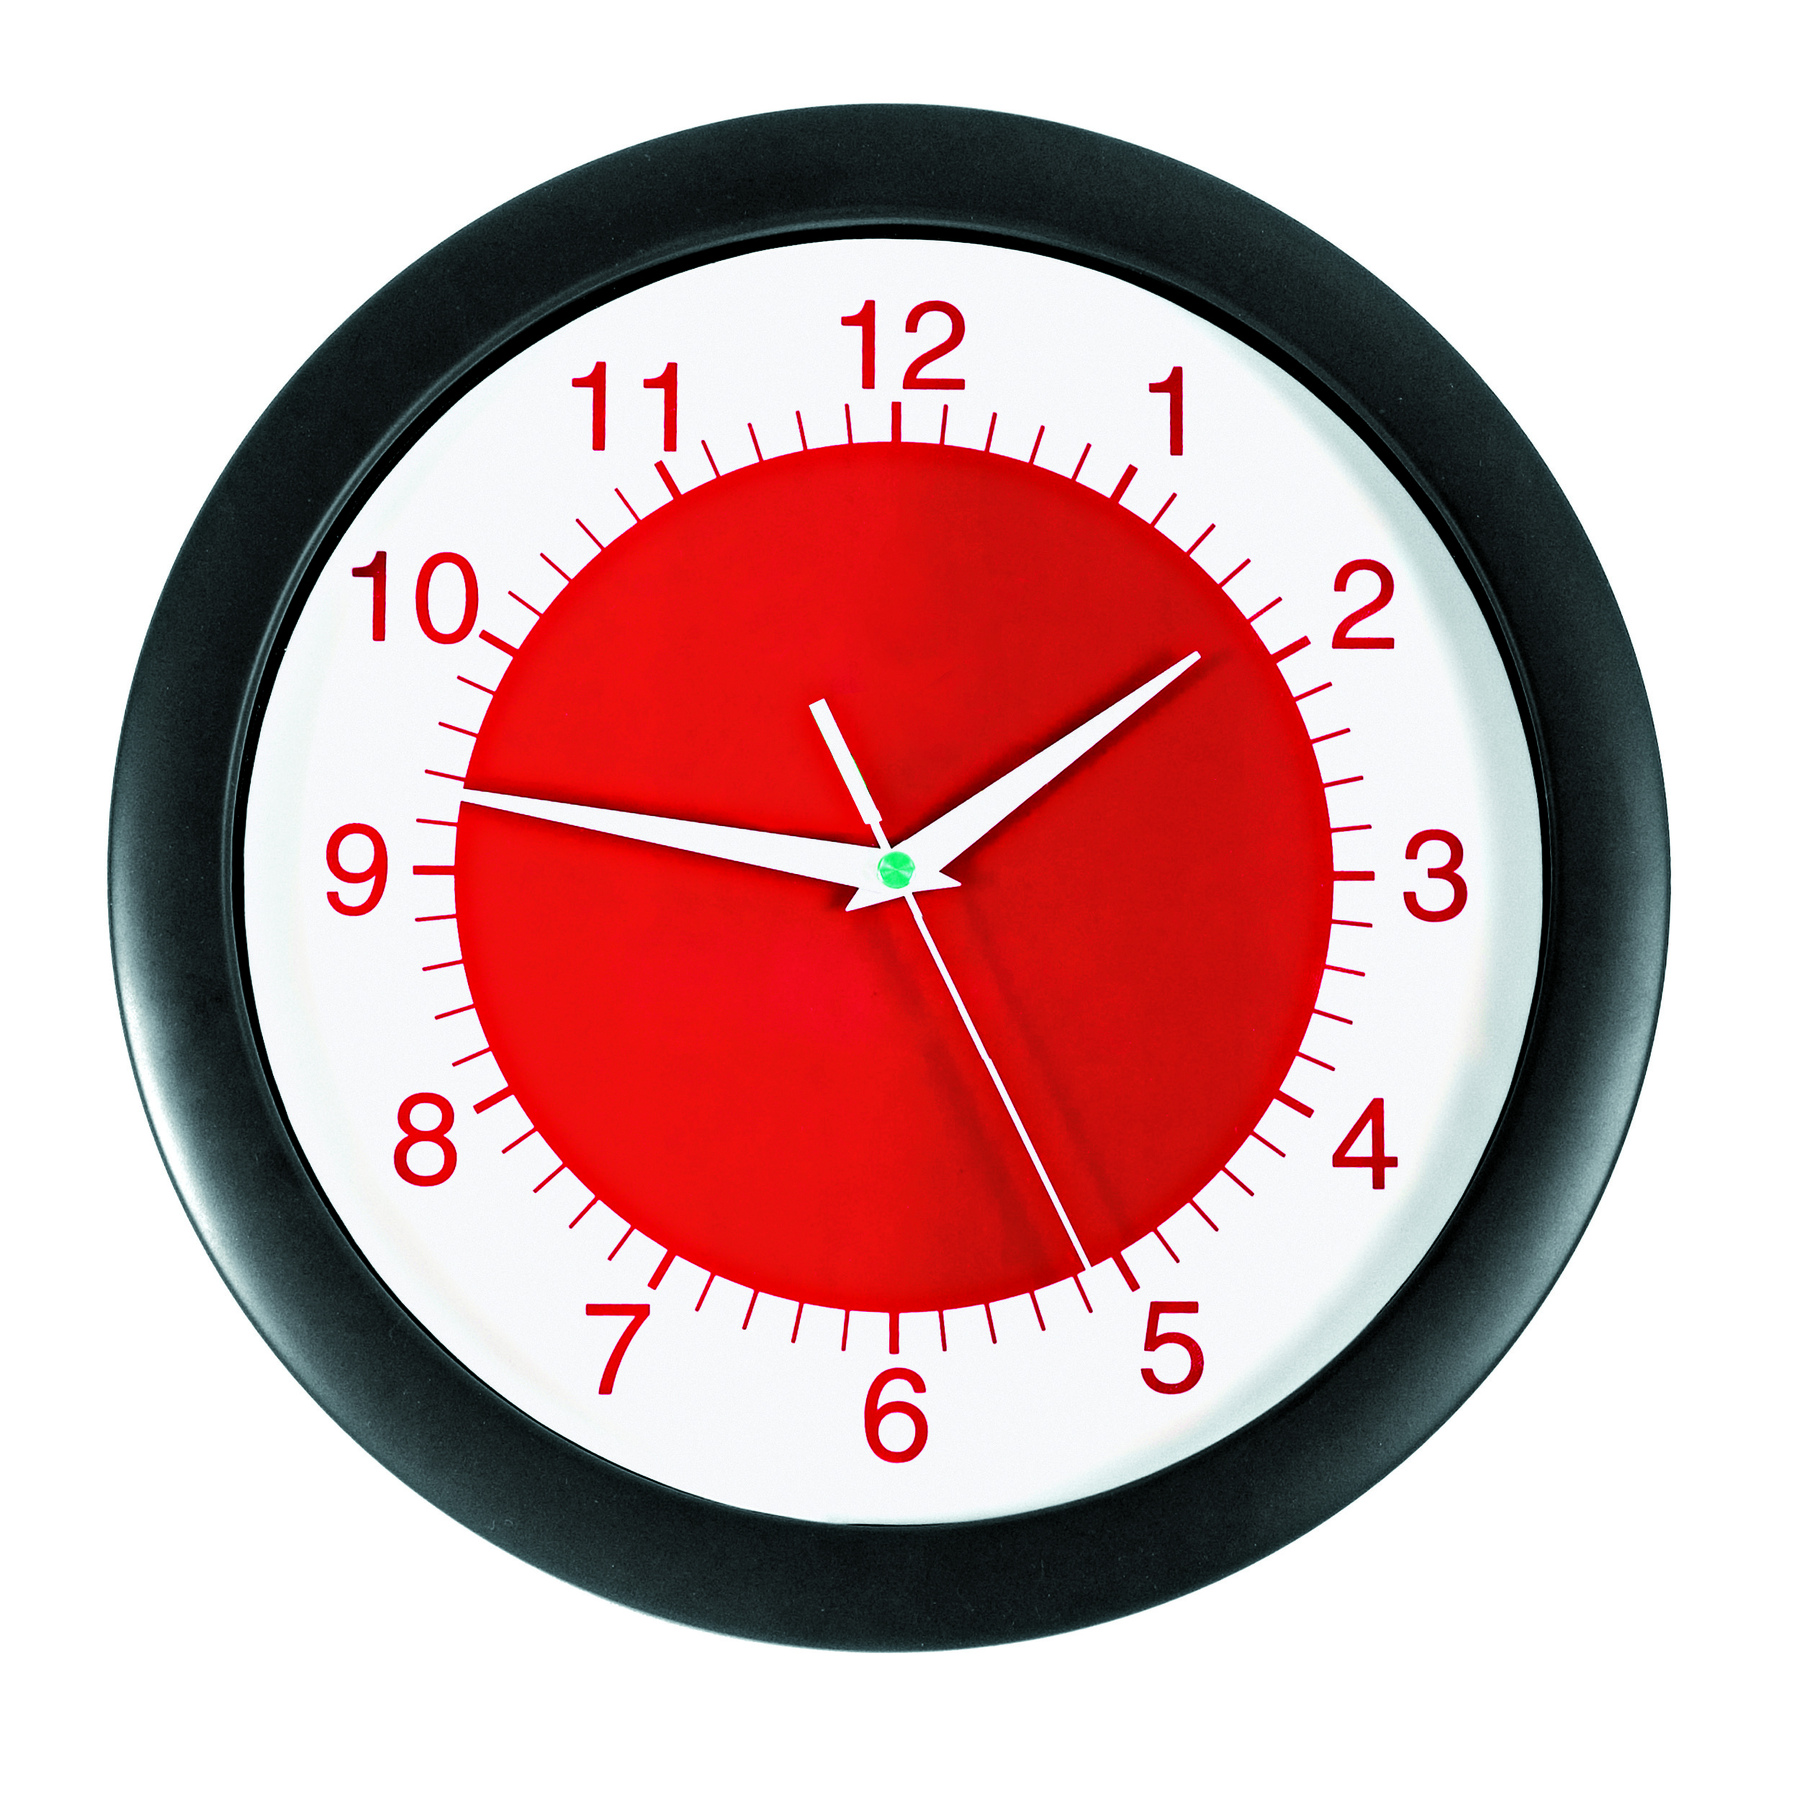 Fotografia.
Relógio de parede com bordas pretas e interior vermelho e branco.
O ponteiro menor aponta para o 2 e o maior entre o 9 e o 10.